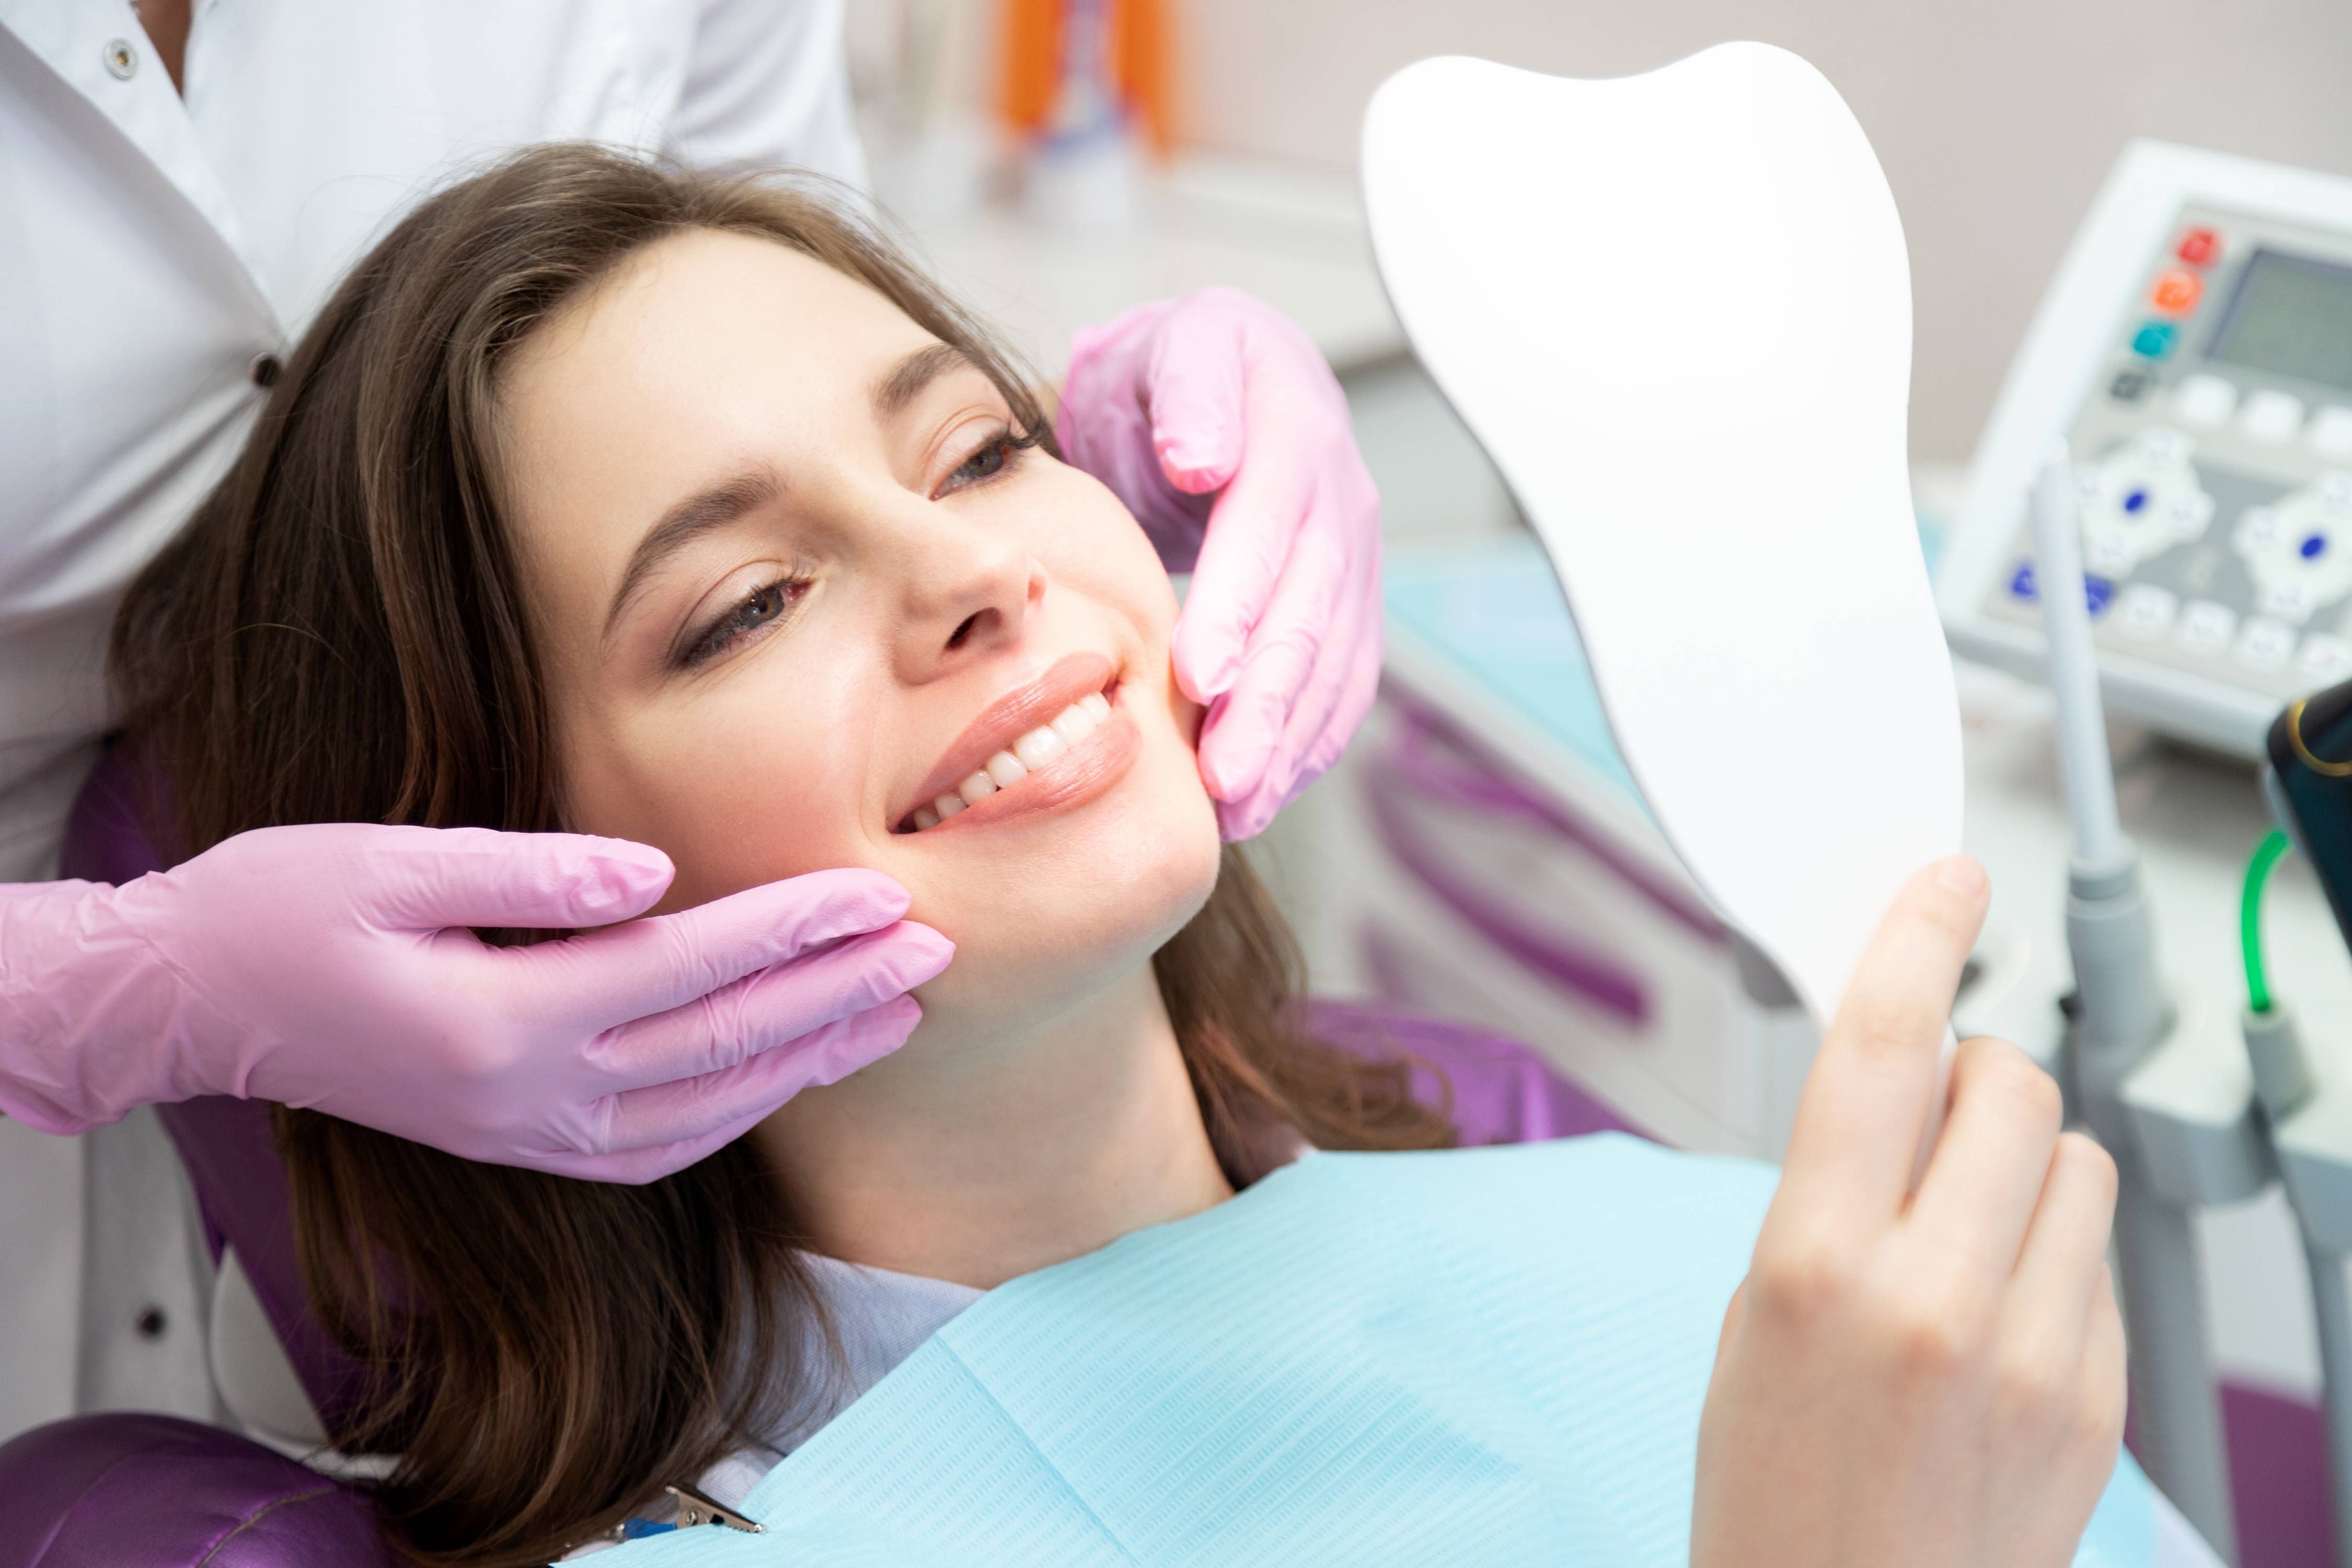 What Is the Process of Dental Veneers?